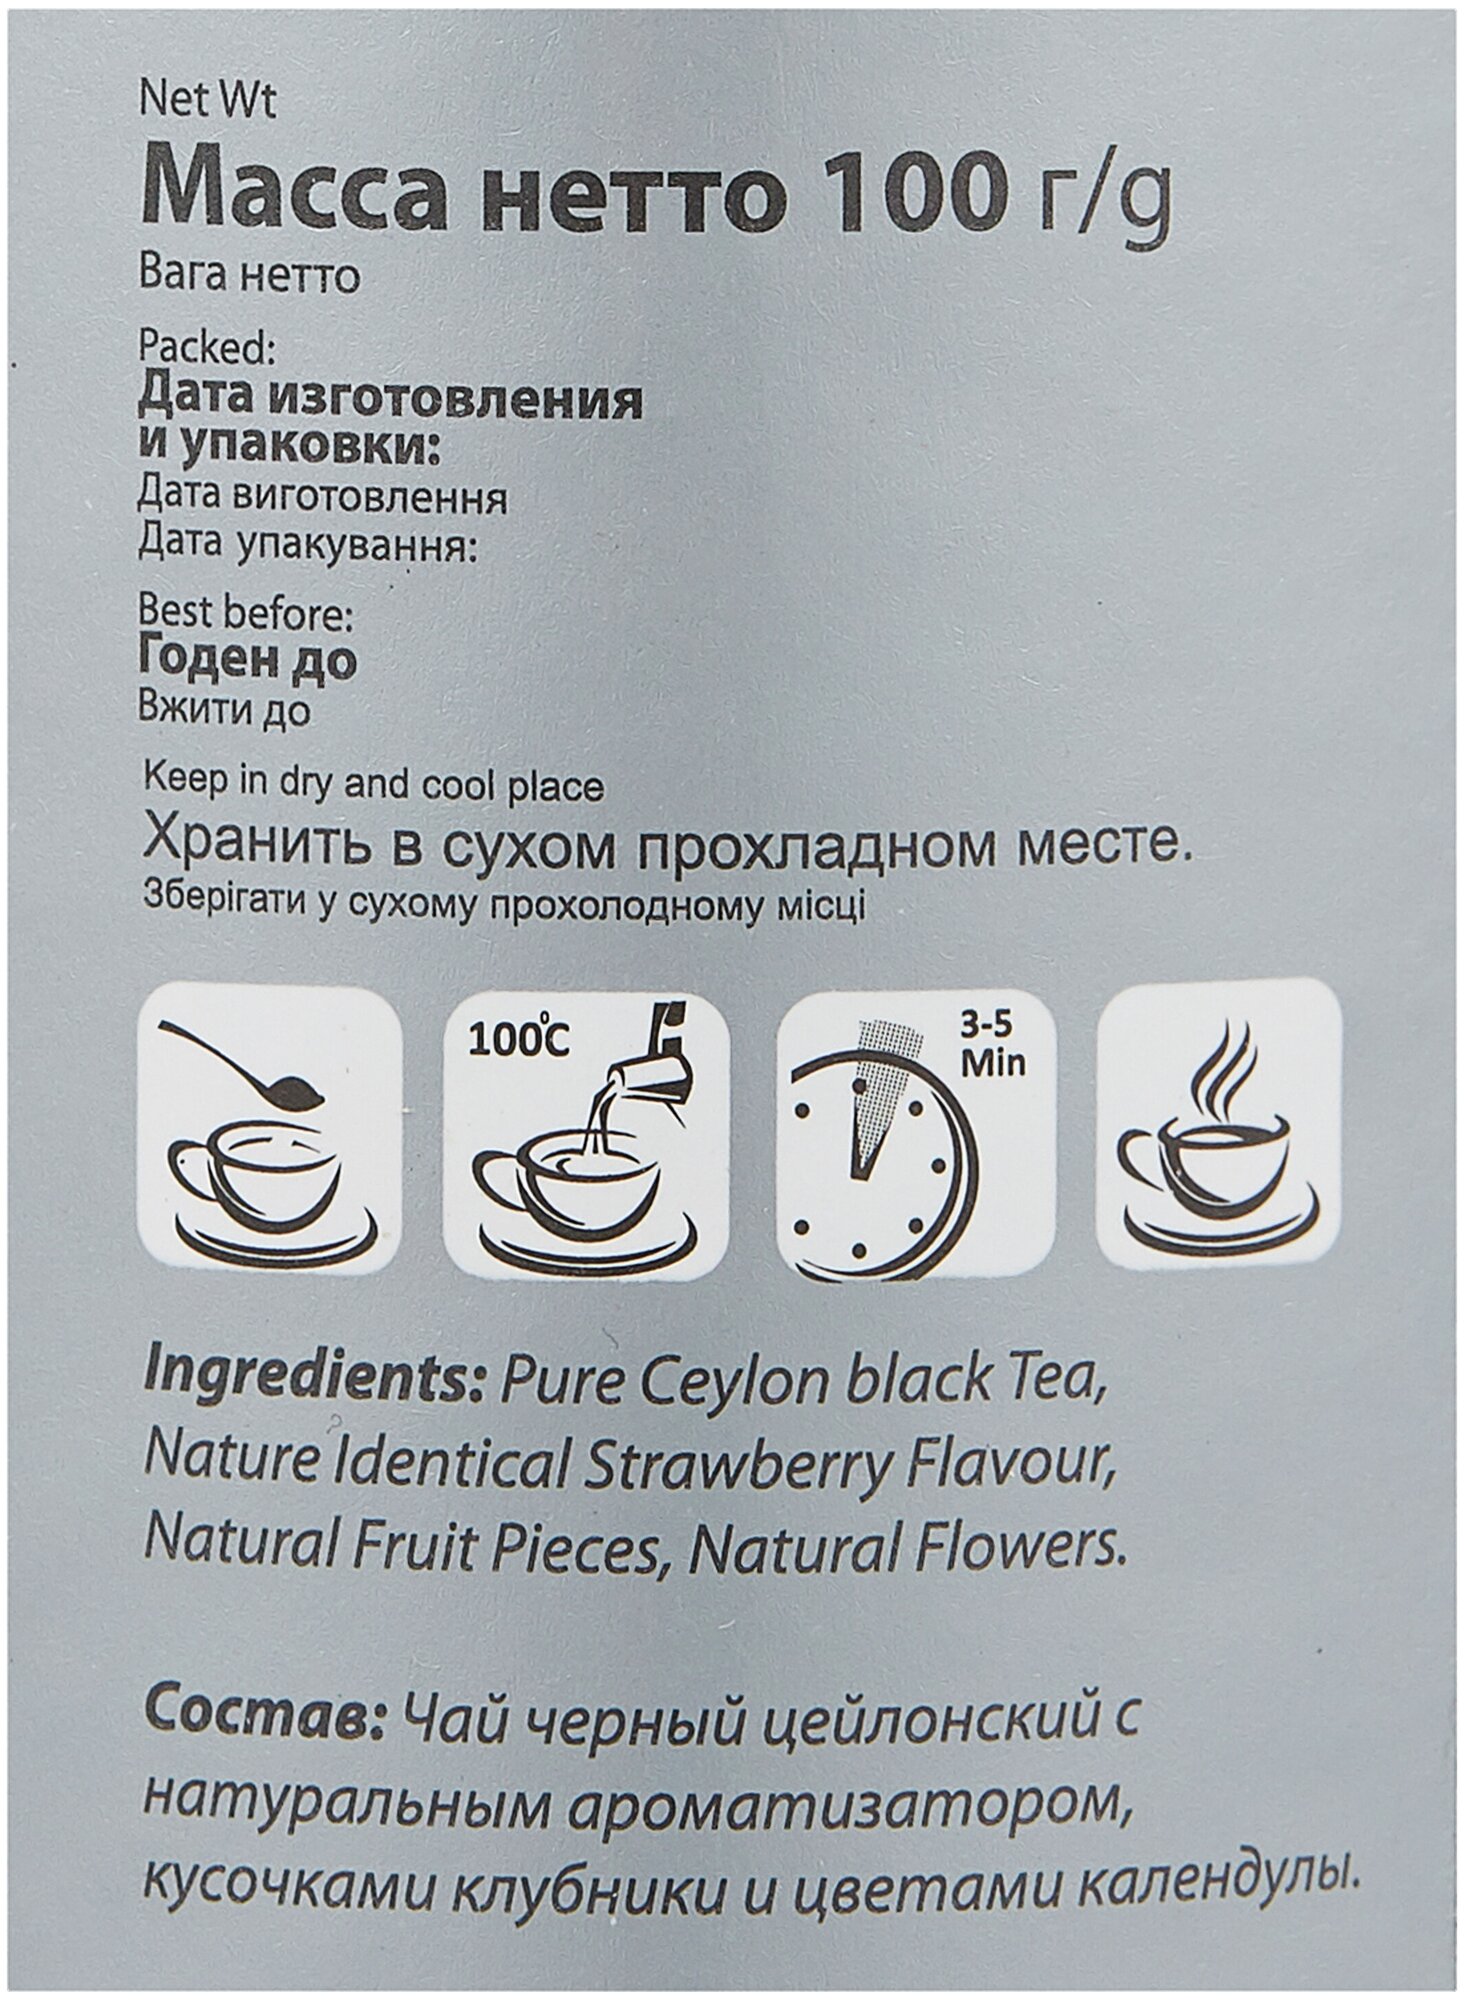 Чай черный листовой Heladiv Strawberry Туба IT 100гр